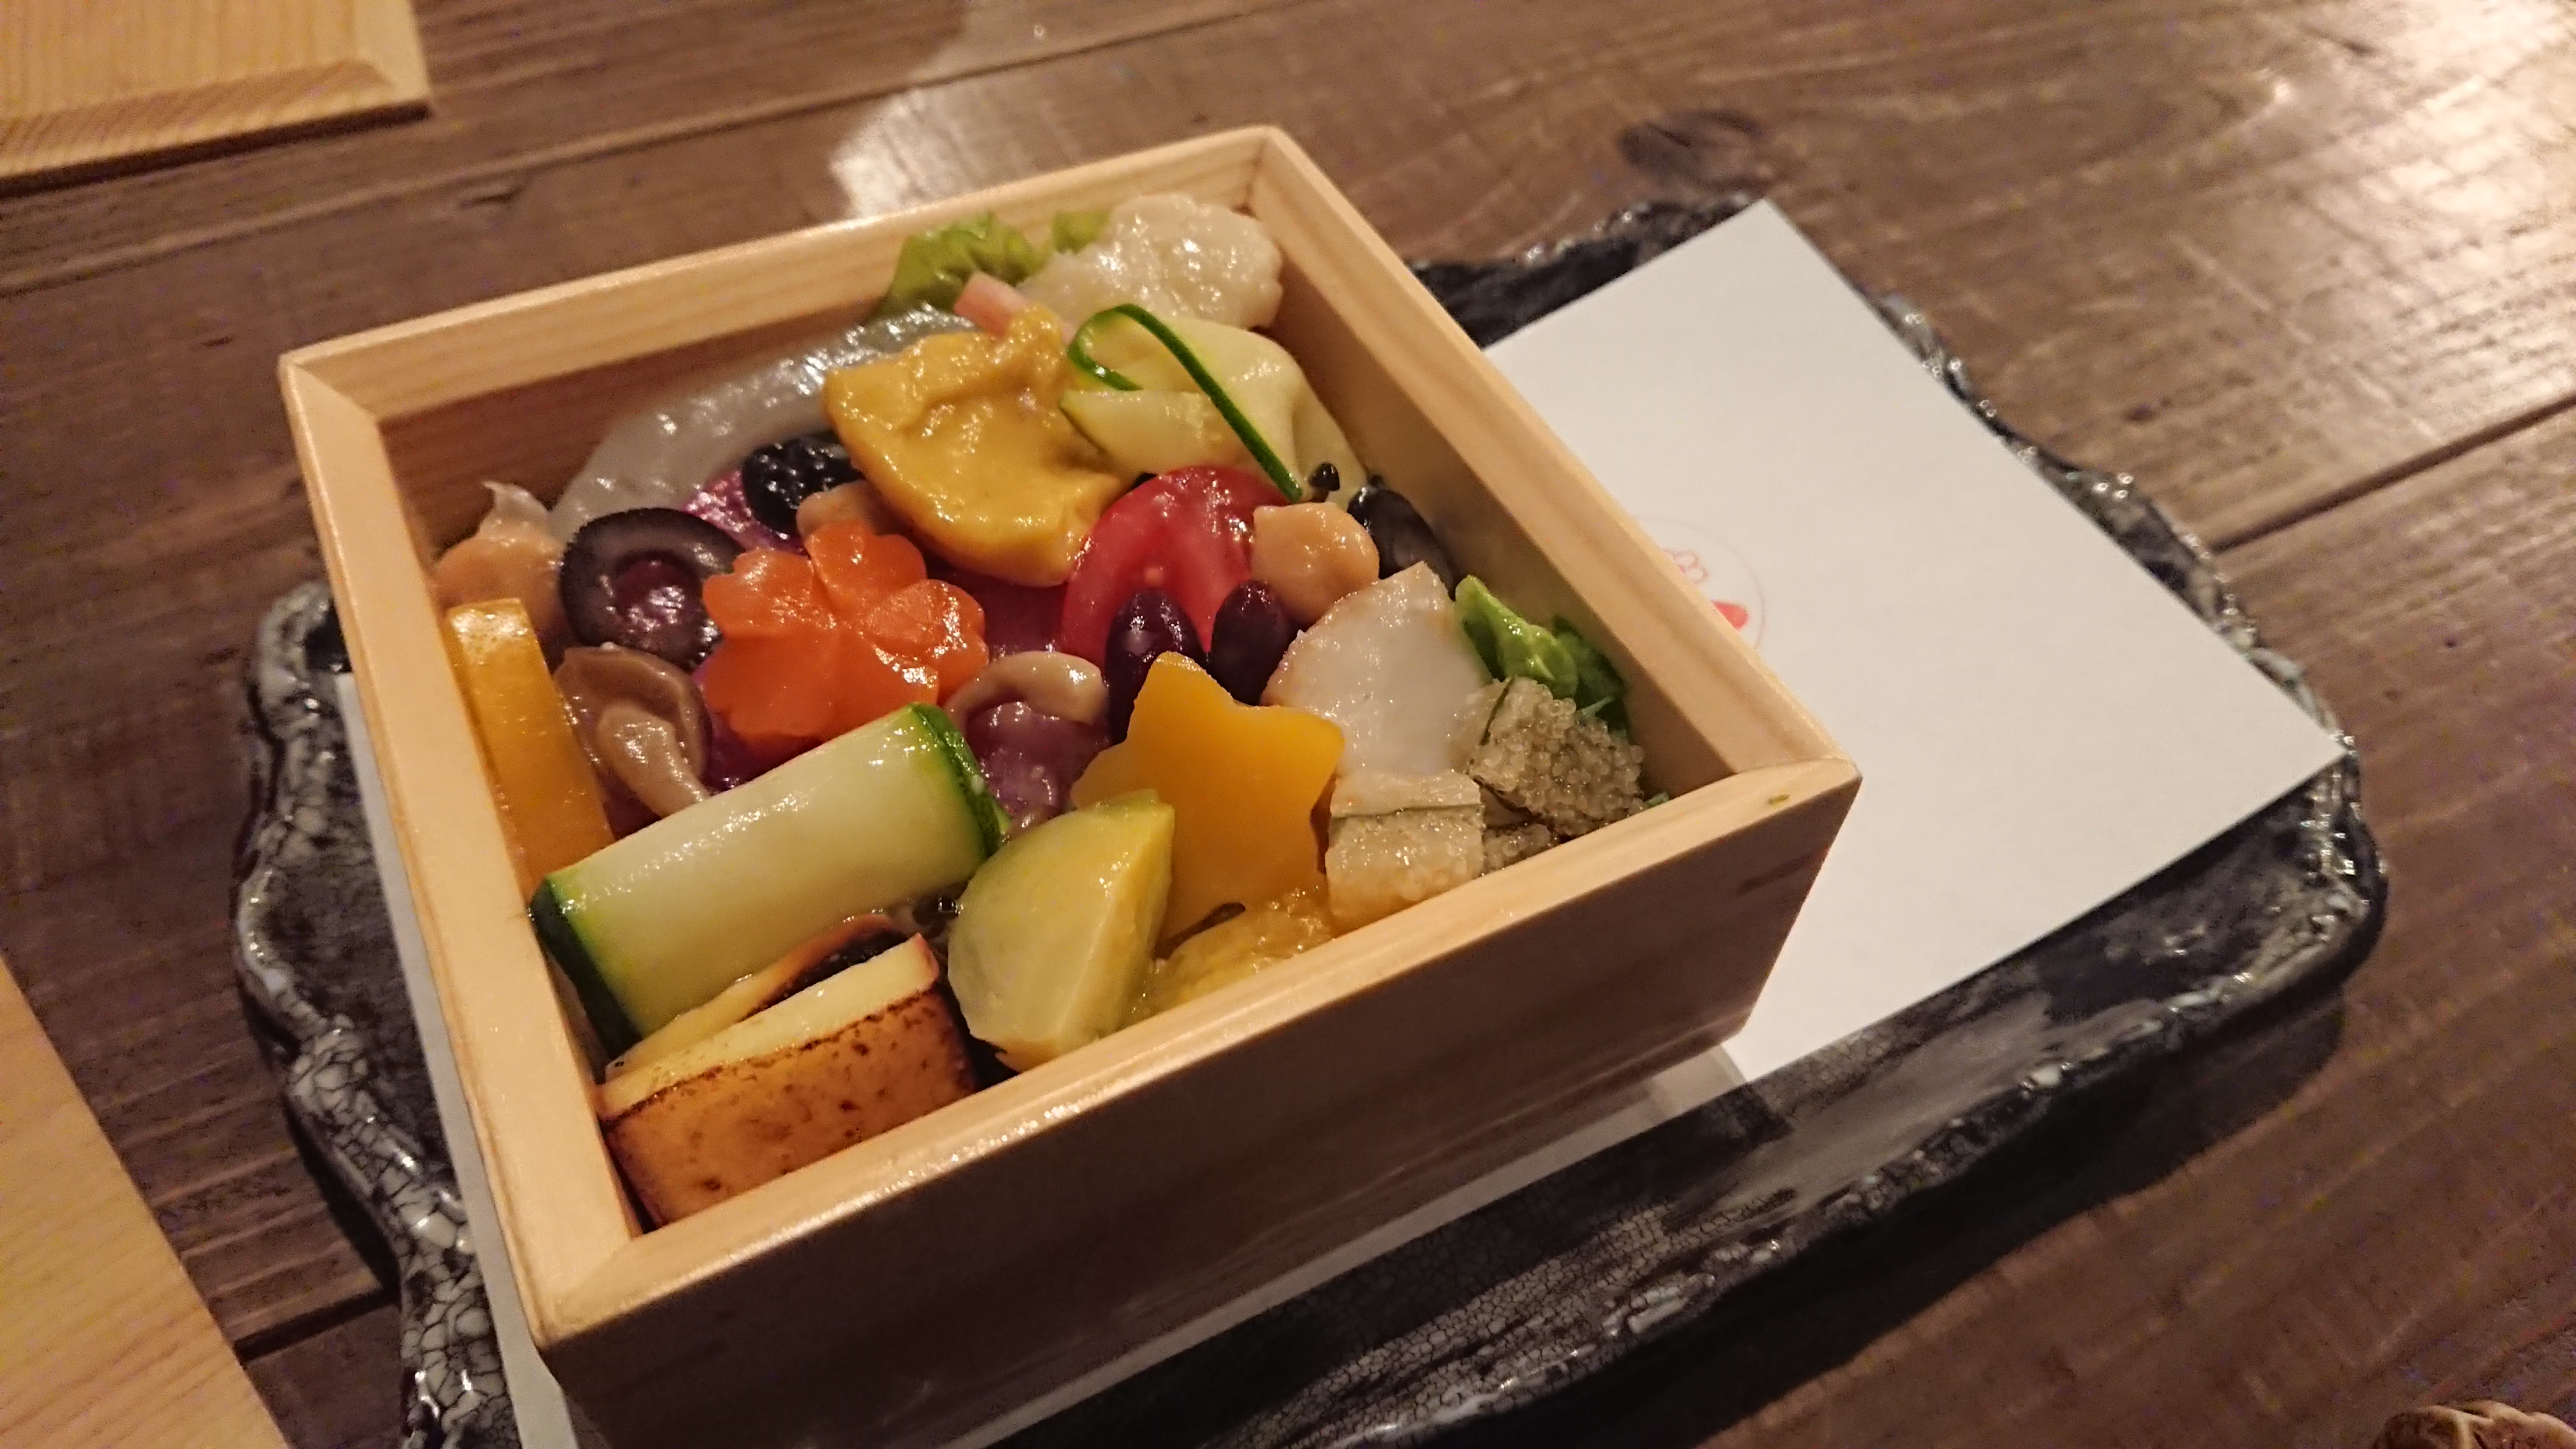 渋谷 三心 手頃なお値段なのに超本格的な割烹料理が楽しめちゃうお店 シブログ